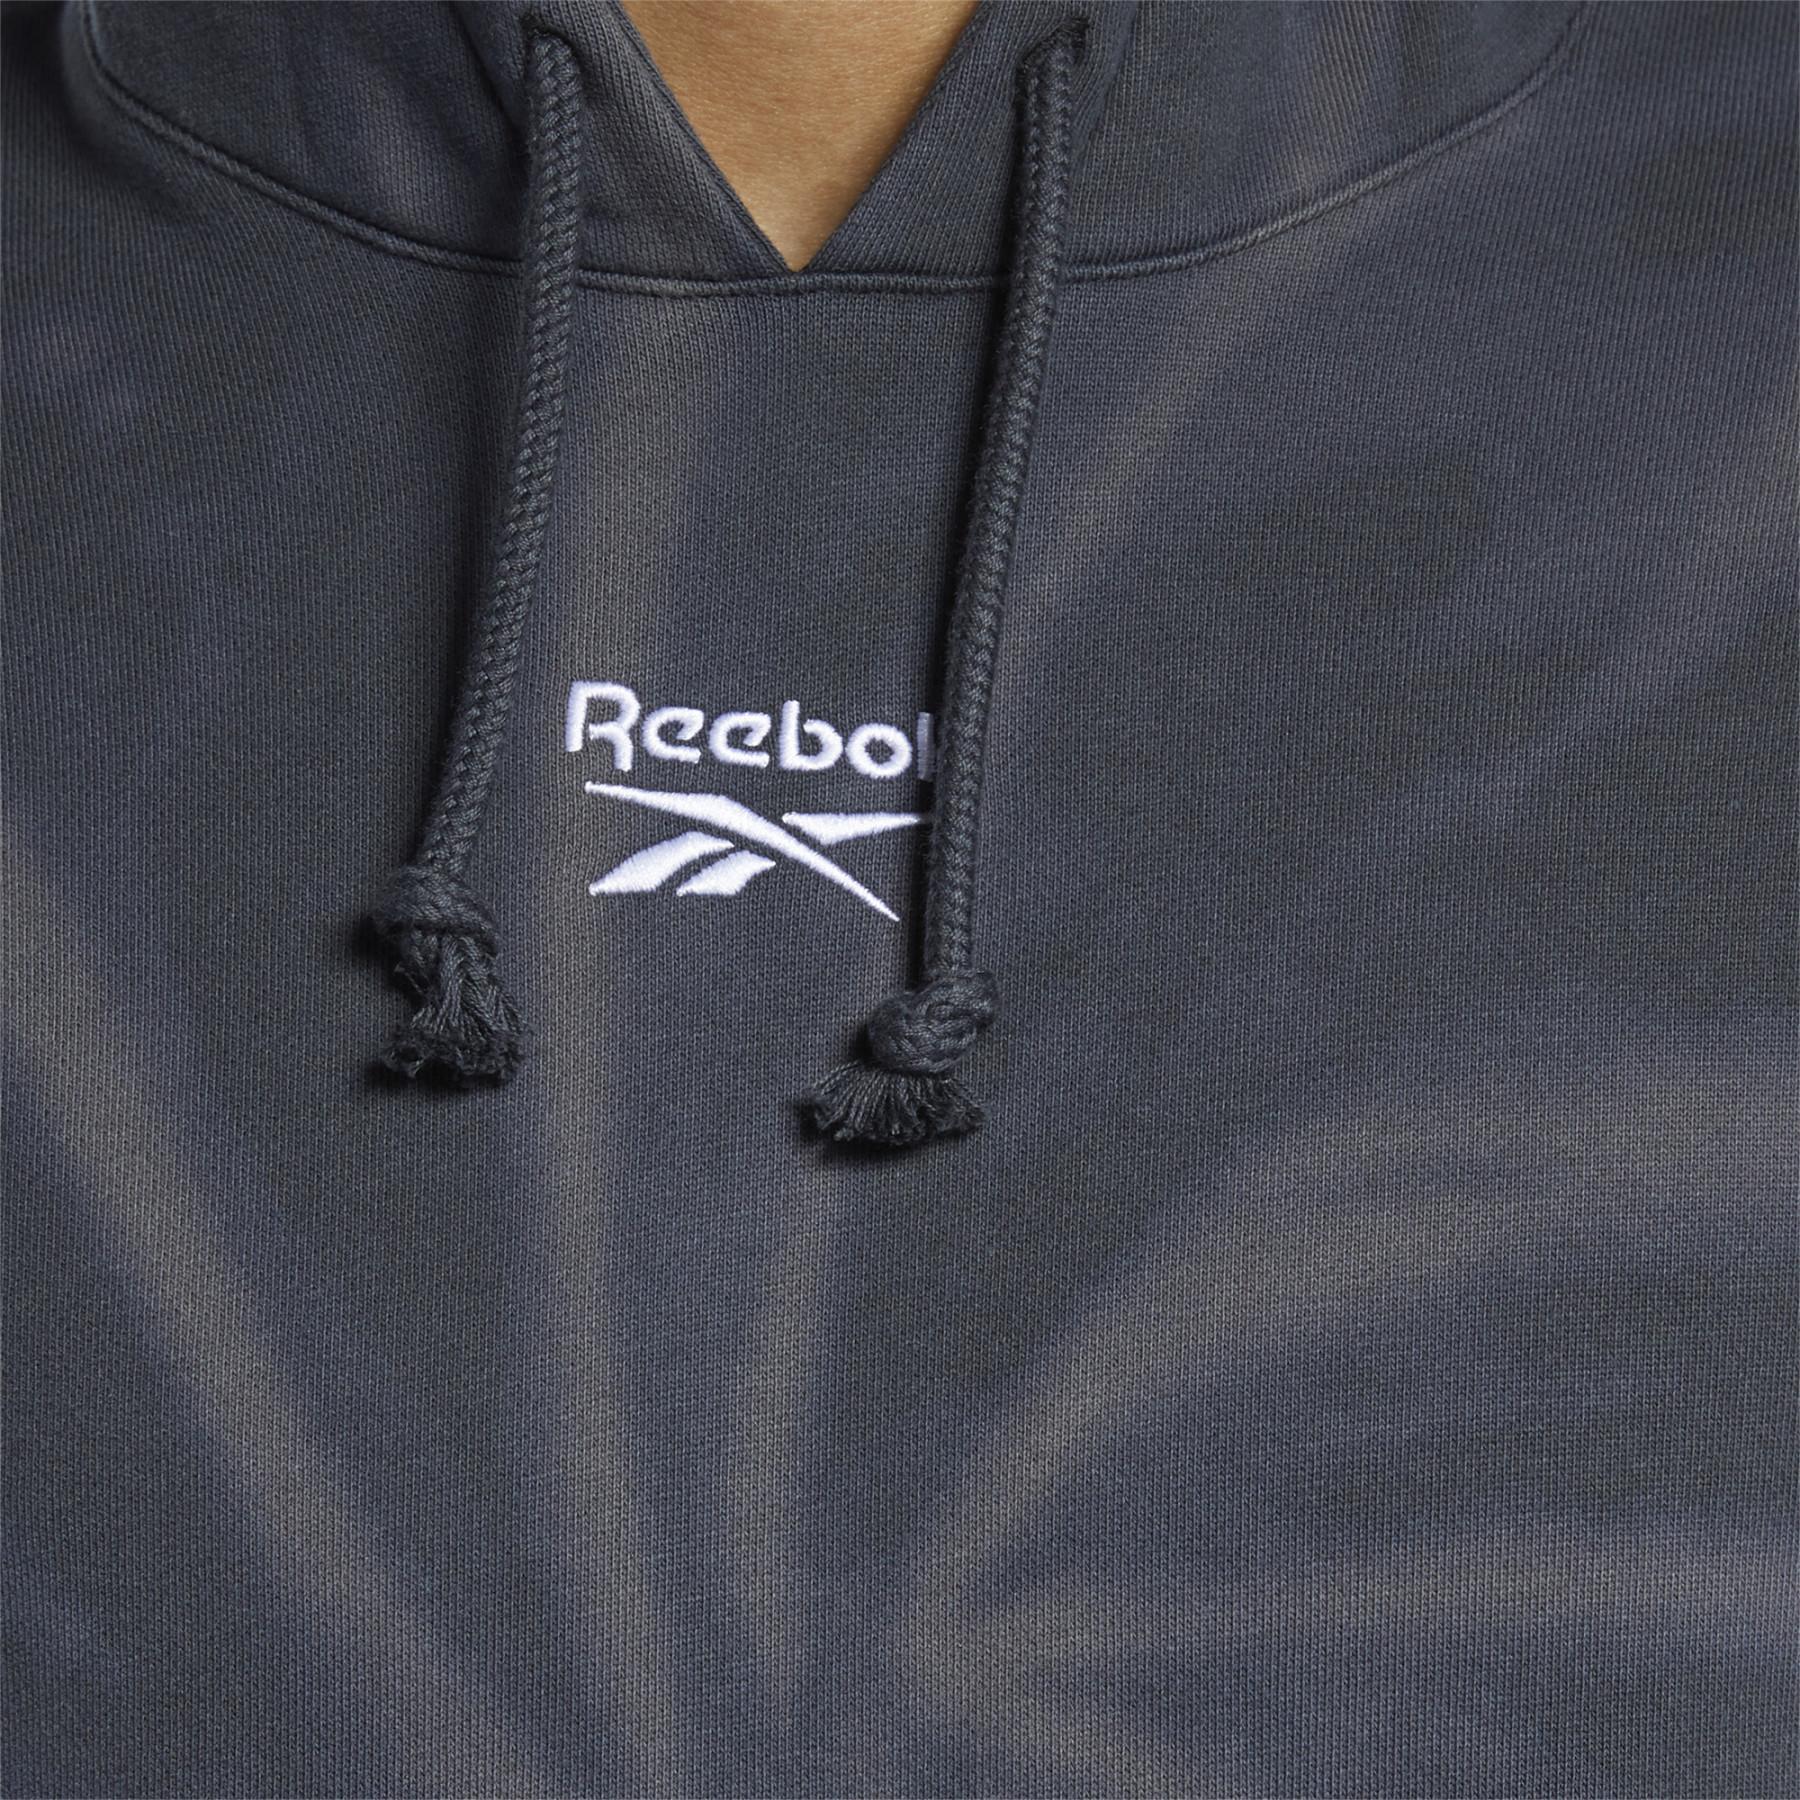 Hooded sweatshirt Reebok Classics Tie-Dye